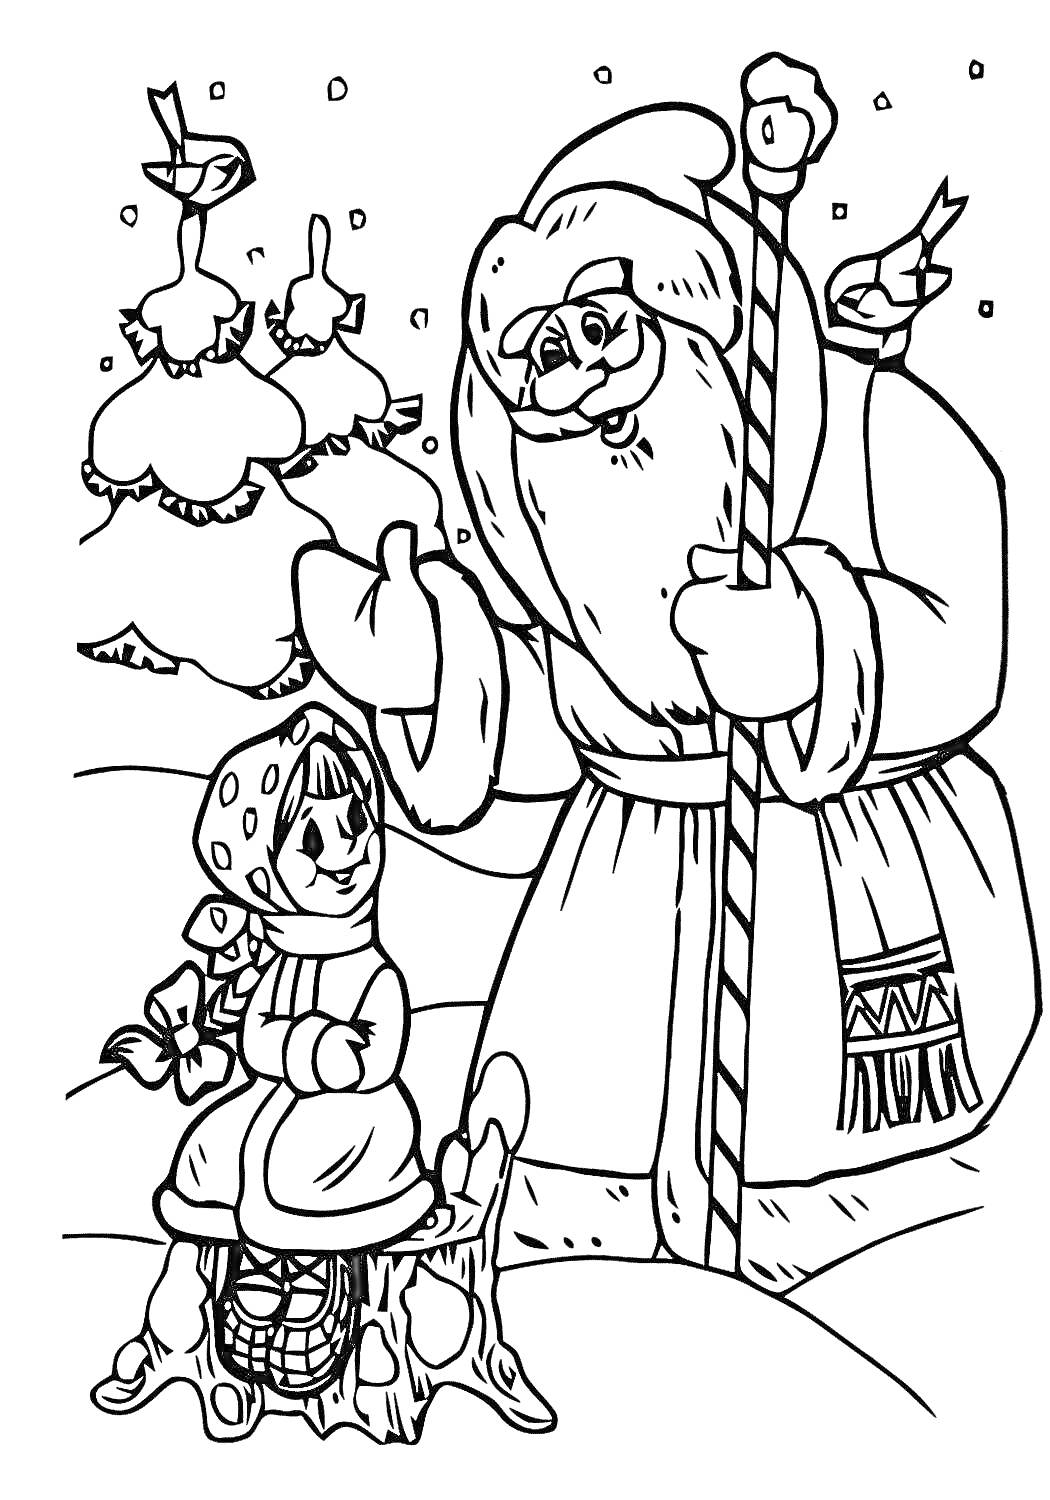 Раскраска Мороз Иванович, девочка-подружка, деревья в снегу, зимняя сцена, птицы на ветках